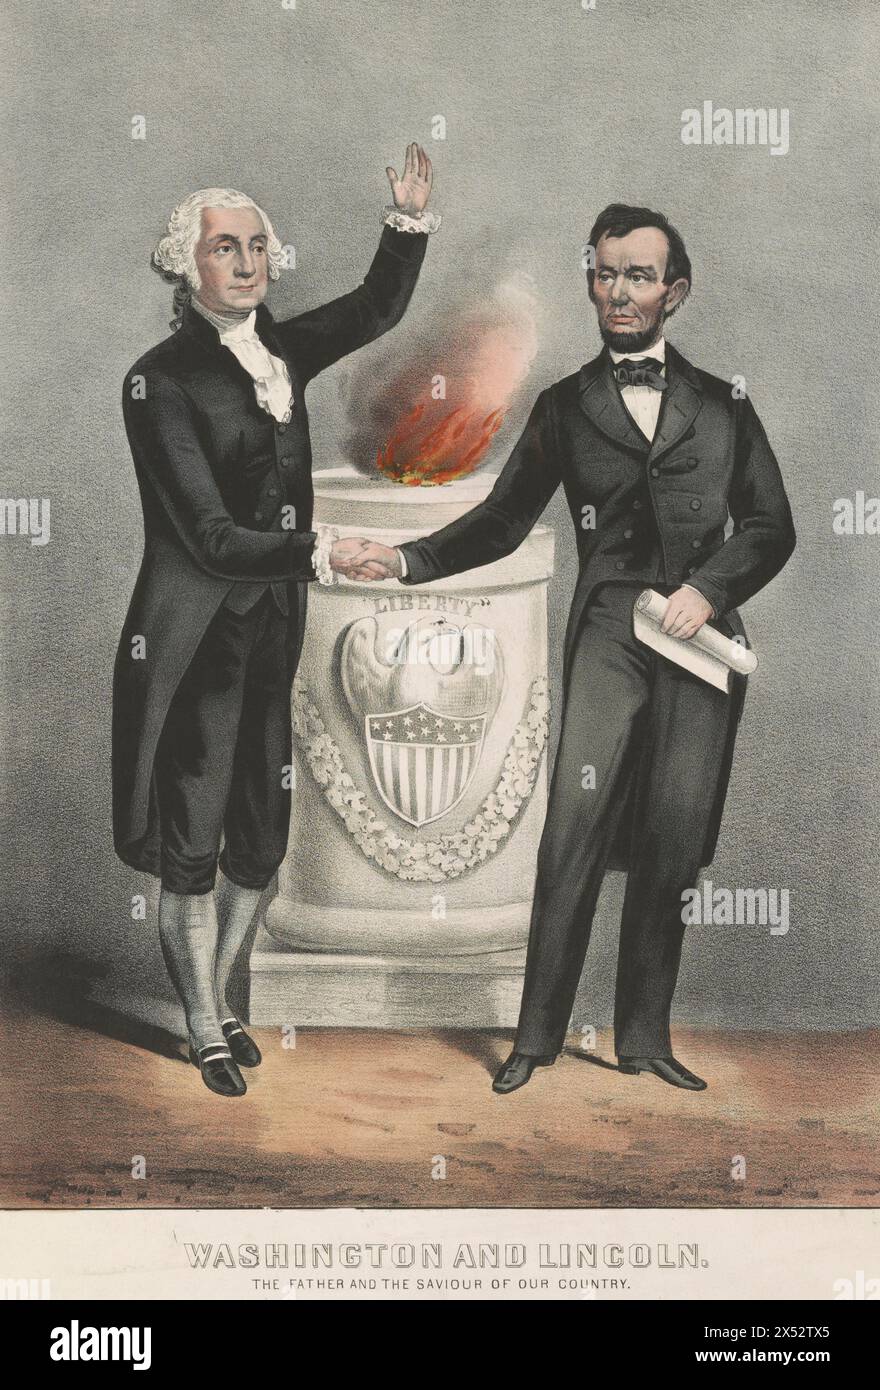 Washington e Lincoln. Il padre e il salvatore del nostro paese, George Washington e Abraham Lincoln stringono la mano di fronte al monumento, su cui c'è un'aquila e uno scudo, e in cima al quale c'è una fiamma, 1865 Foto Stock